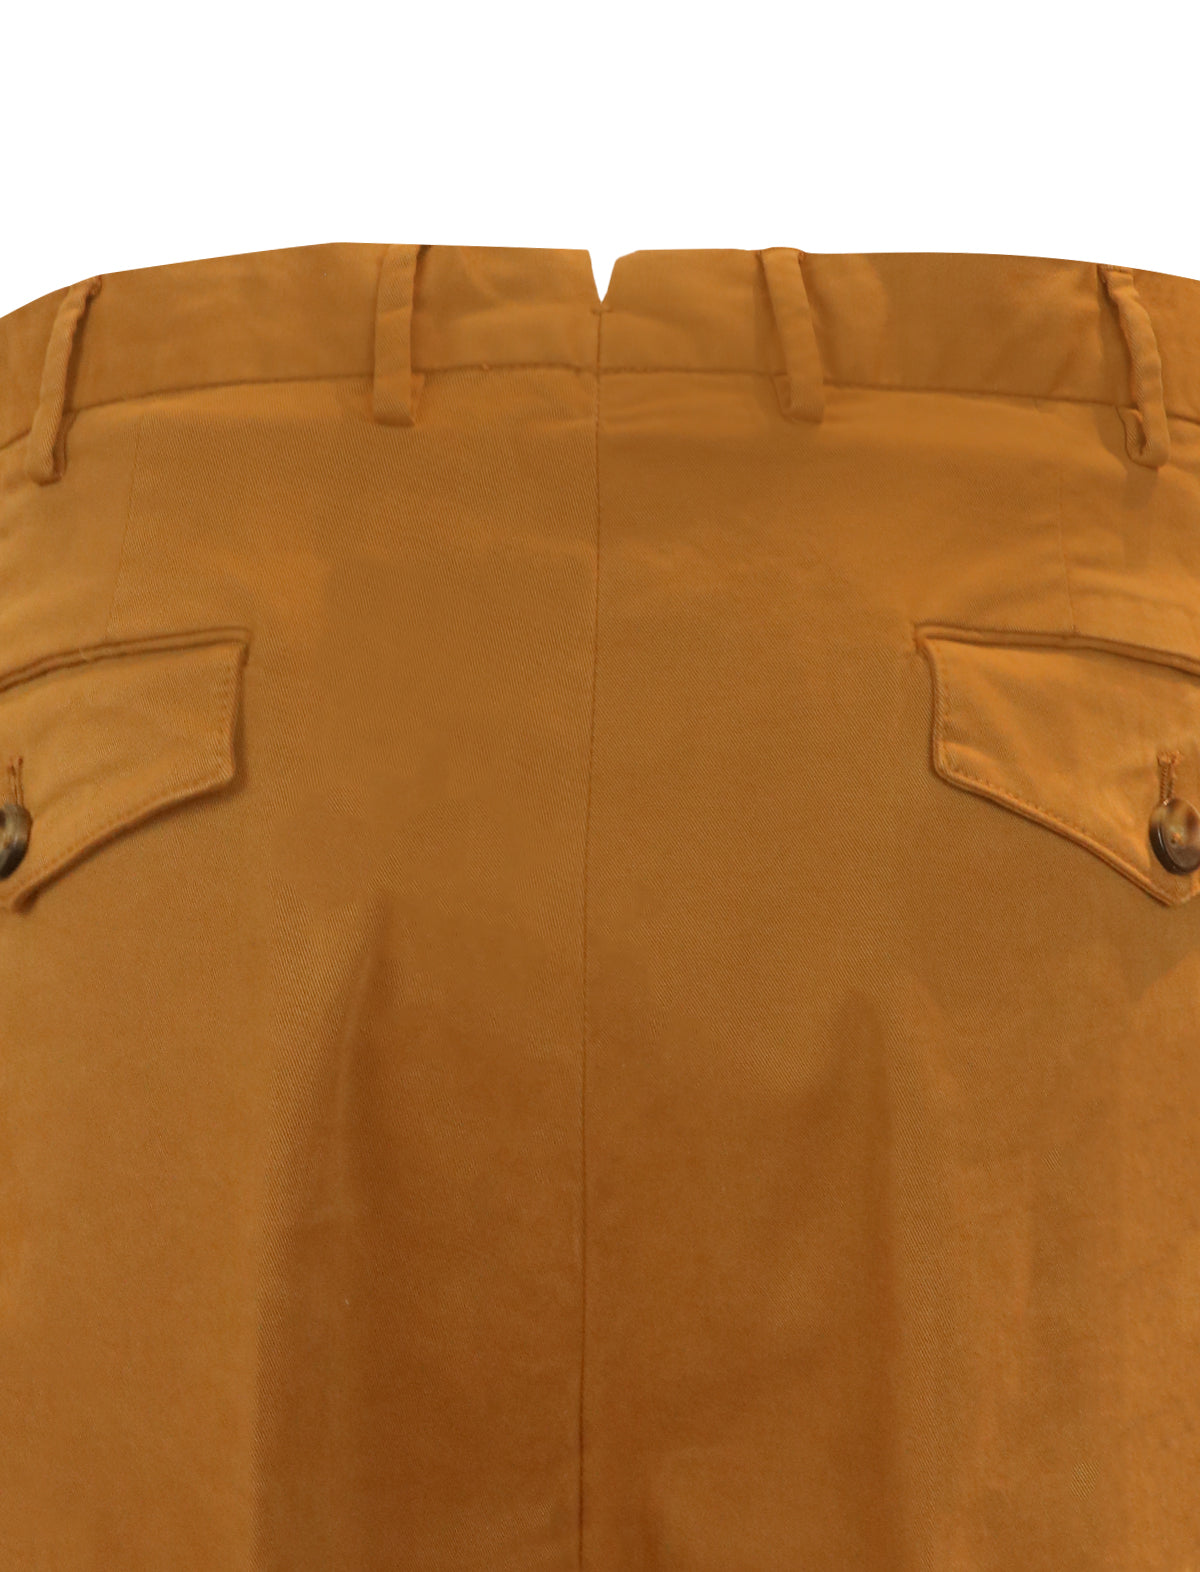 PT TORINO Reworked Trouser in Orange-Brown